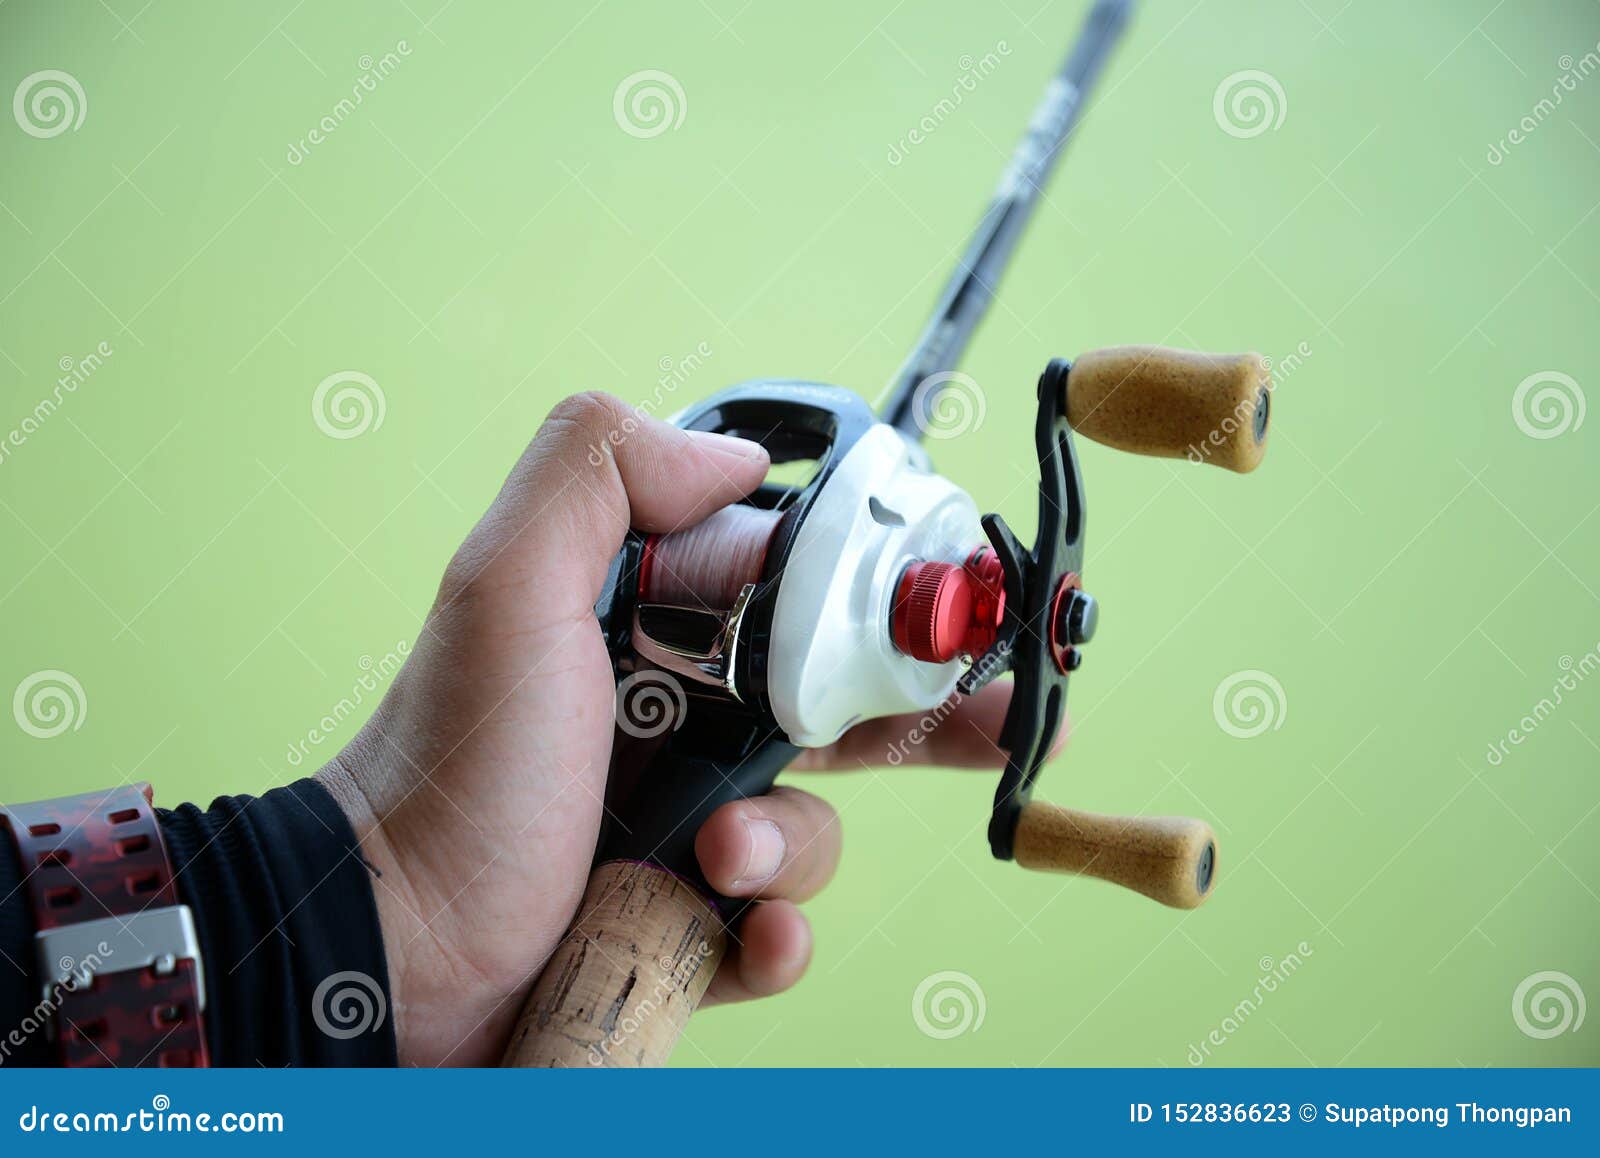 https://thumbs.dreamstime.com/z/people-holding-bait-casting-fishing-reel-people-holding-bait-casting-fishing-rod-reel-152836623.jpg